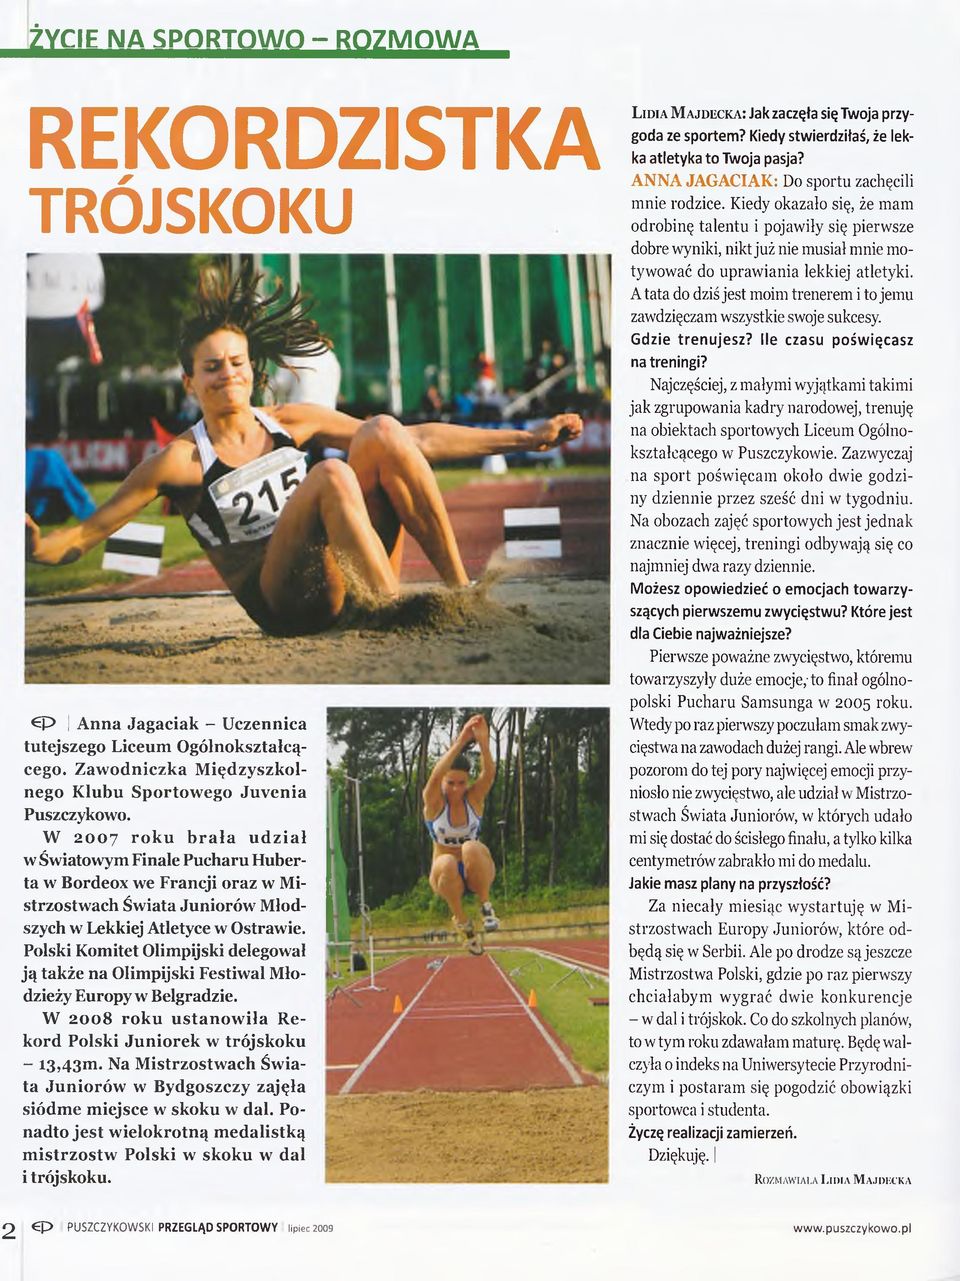 Polski Komitet Olimpijski delegował ją także na Olimpijski Festiwal Młodzieży Europy w Belgradzie. W 2008 roku ustanowiła Rekord Polski Juniorek w trójskoku - I3,43m.